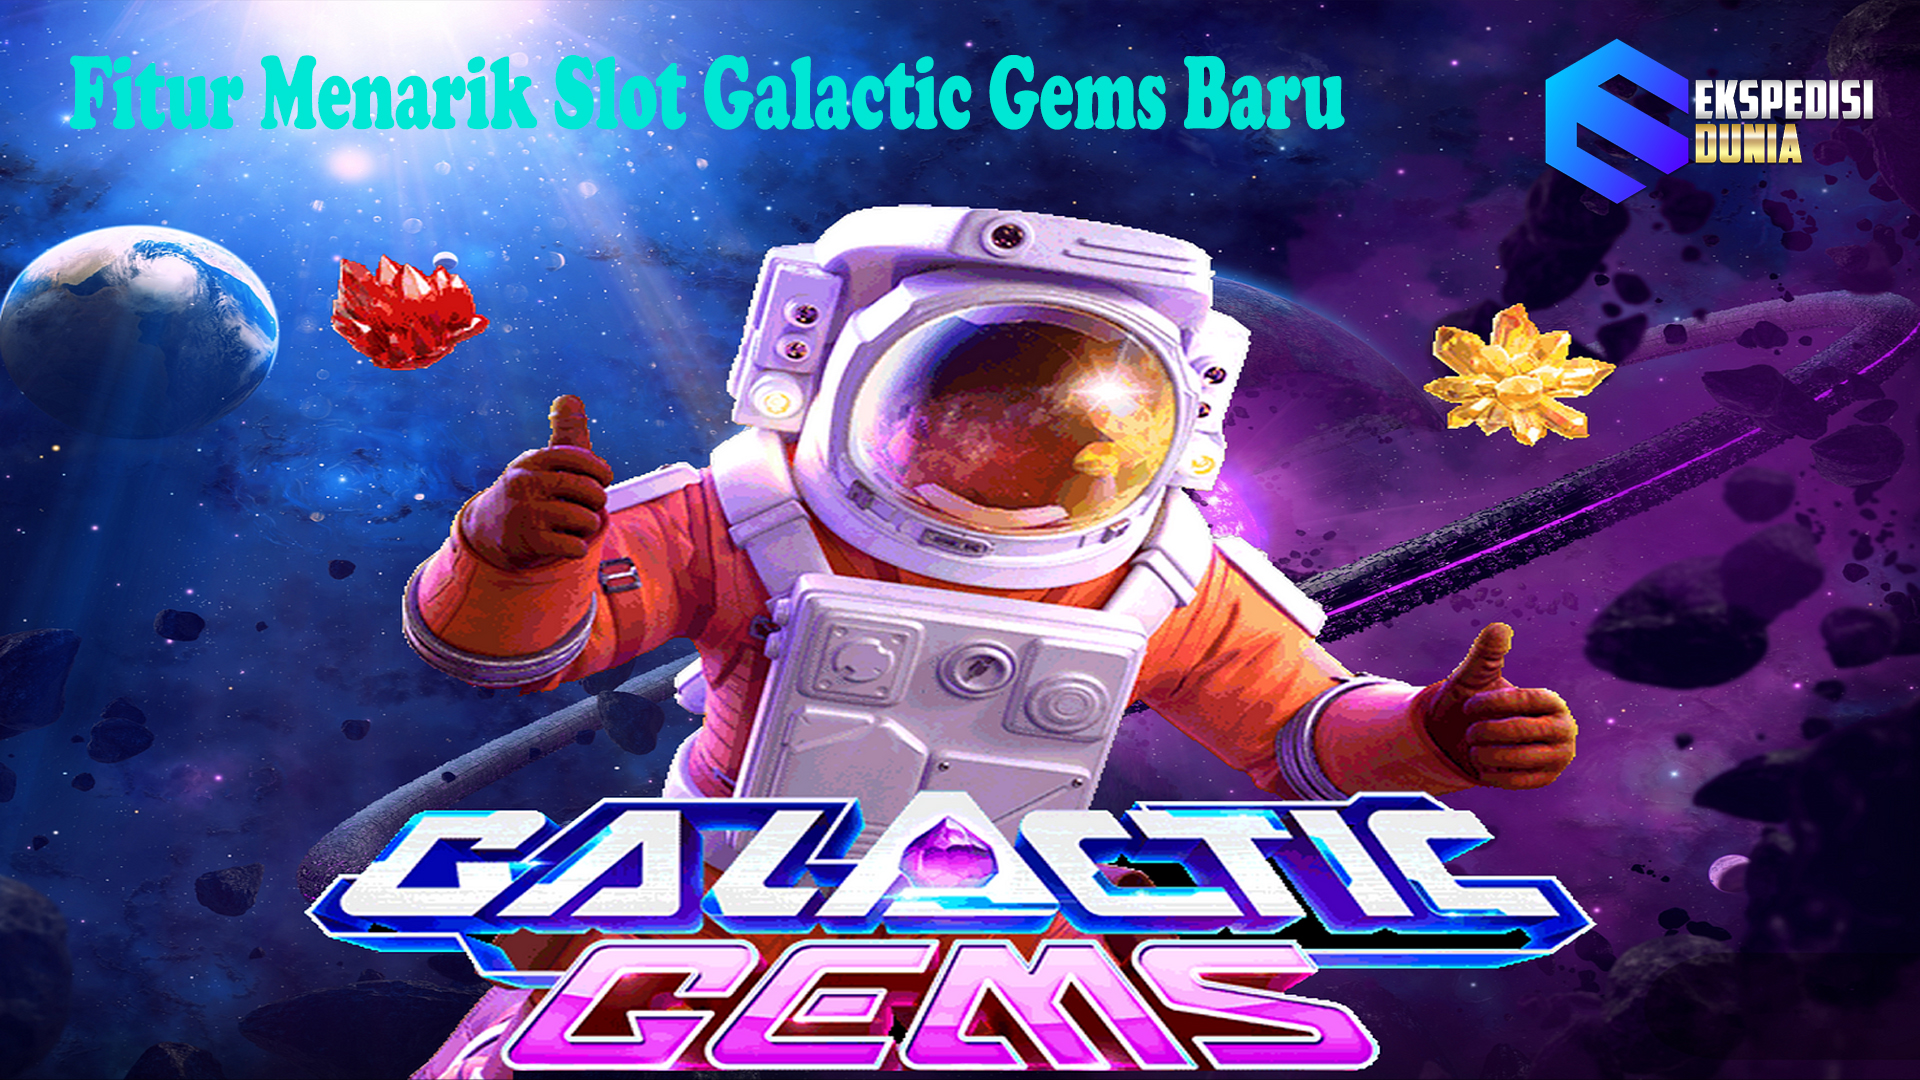 Fitur Menarik Slot Galactic Gems Baru